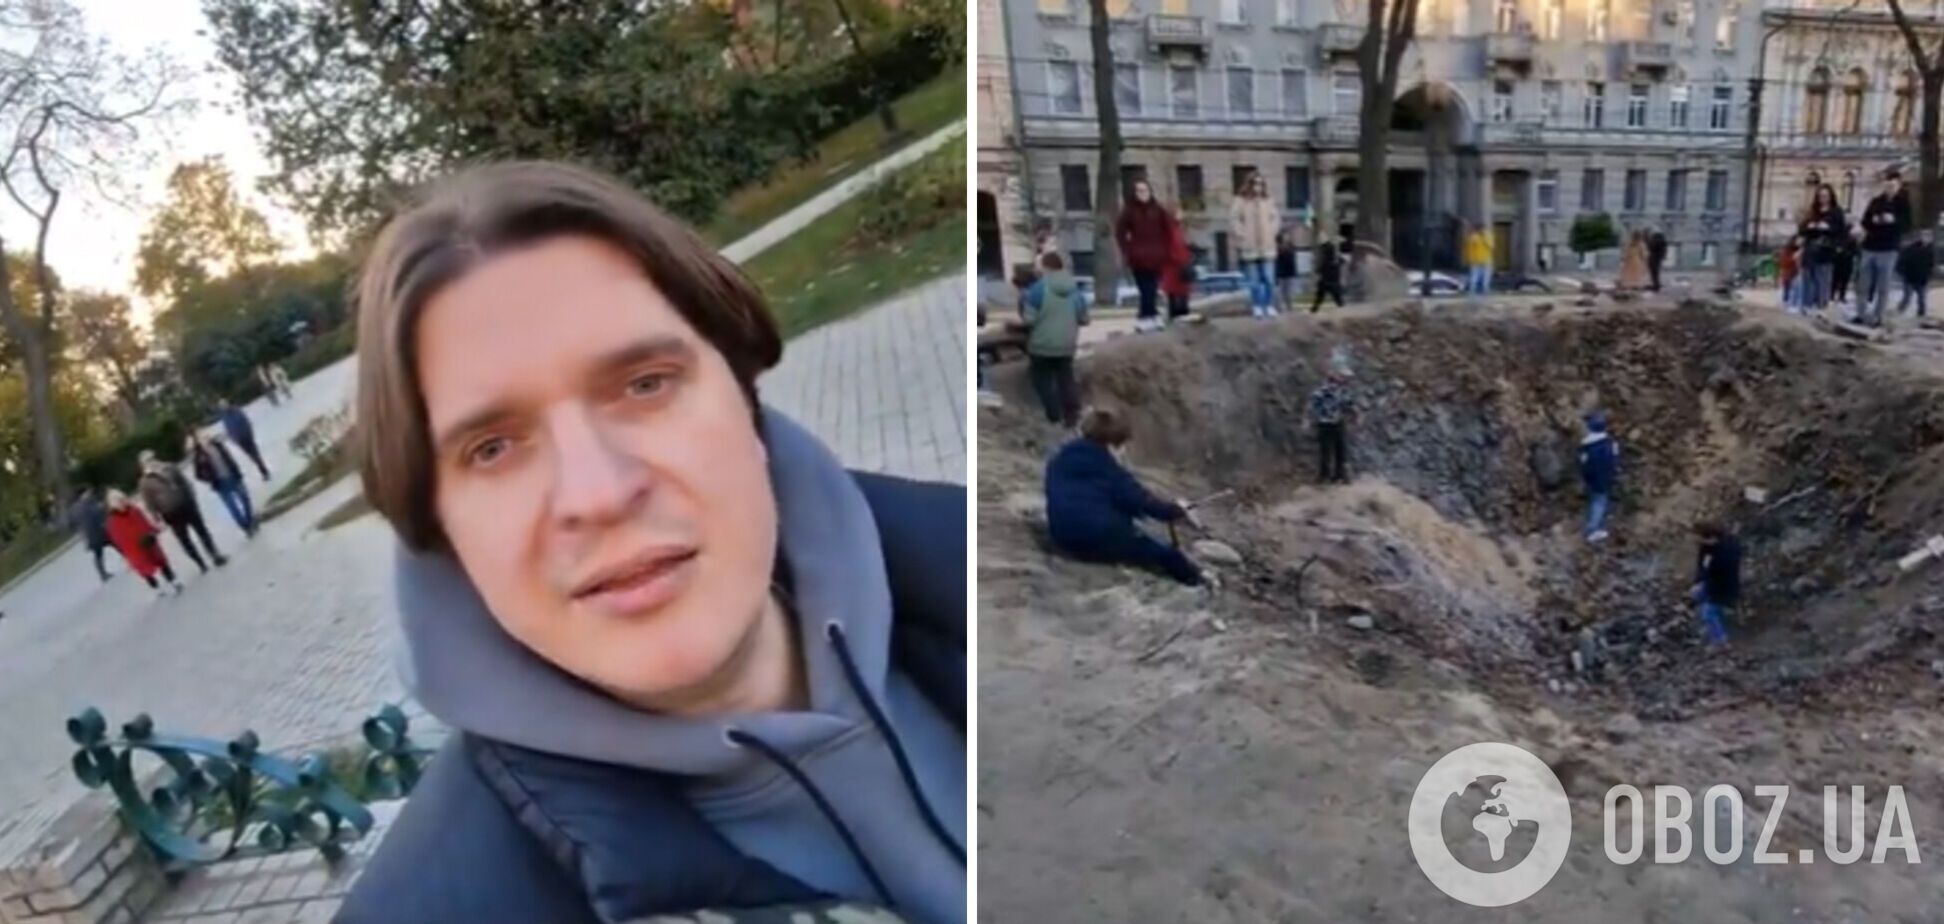 Дети играют в воронке от российской ракеты: Анатолич показал красноречивое видео с площадки в парке Шевченко